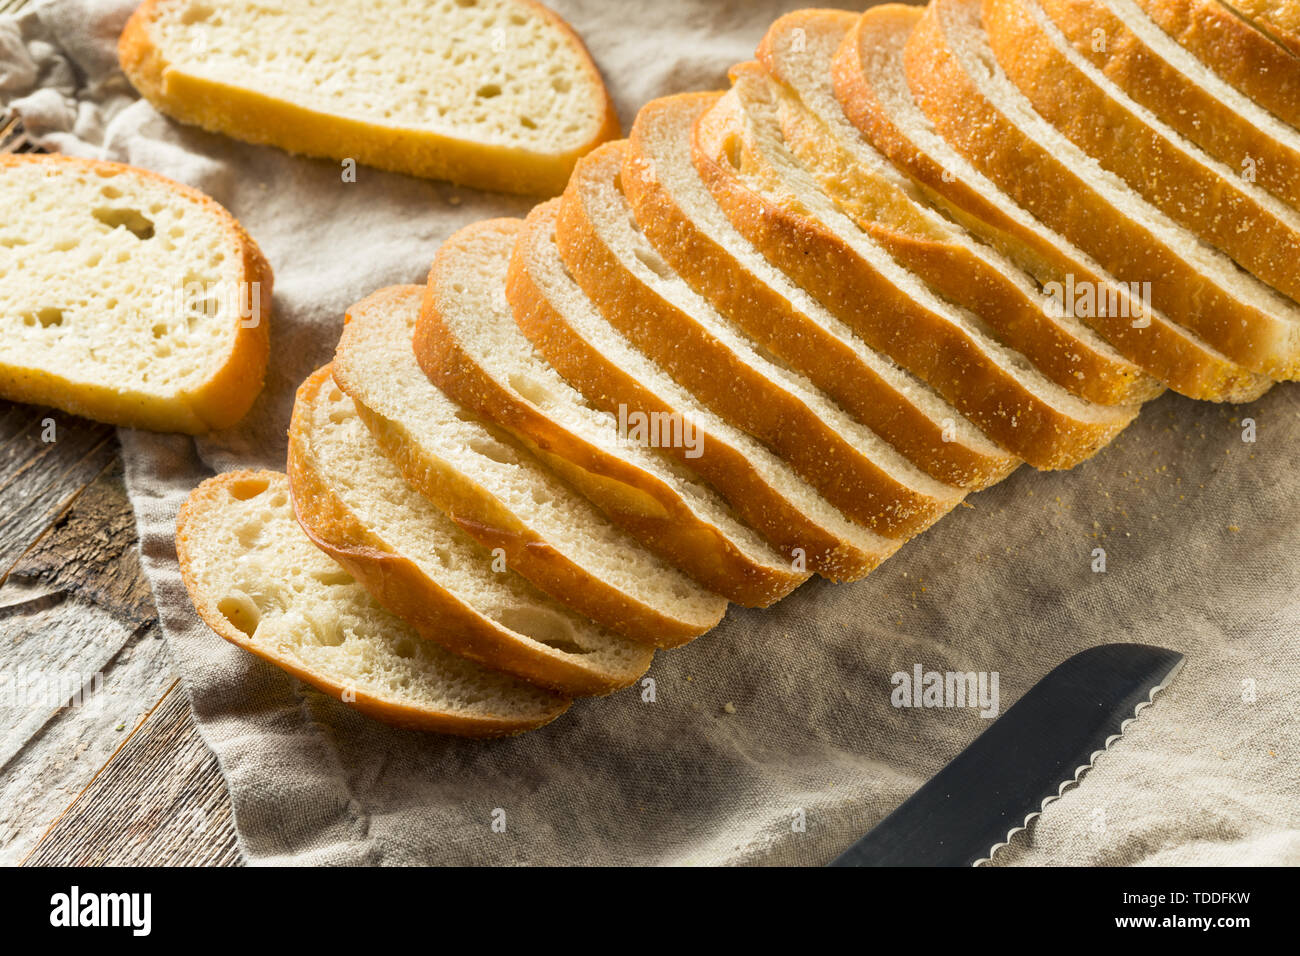 Des tranches de pain au levain prêt à manger Banque D'Images